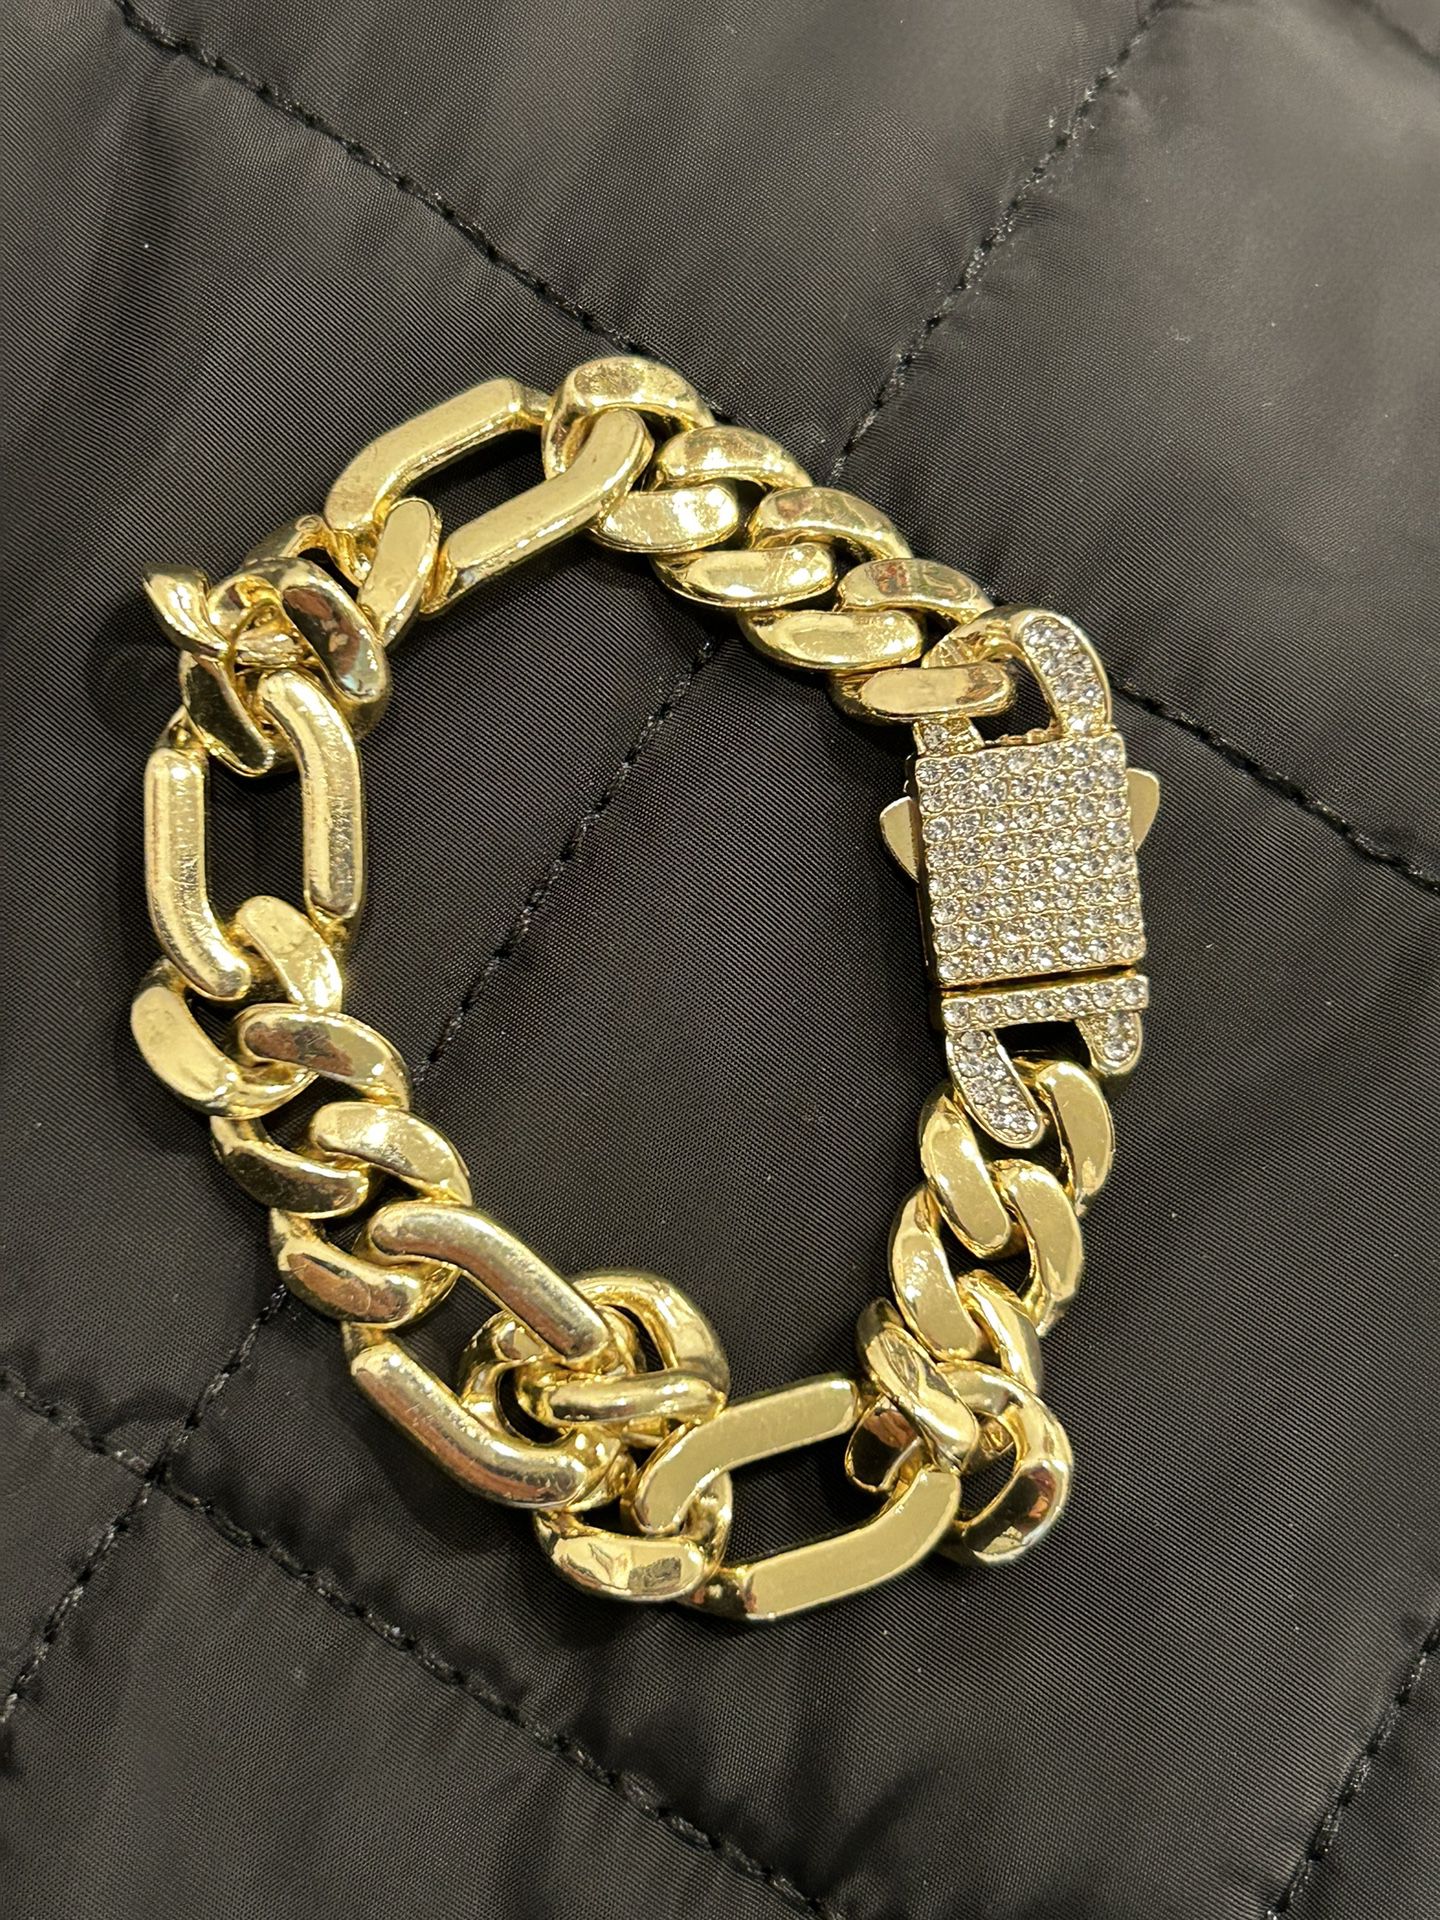 solid gold plated bracelet